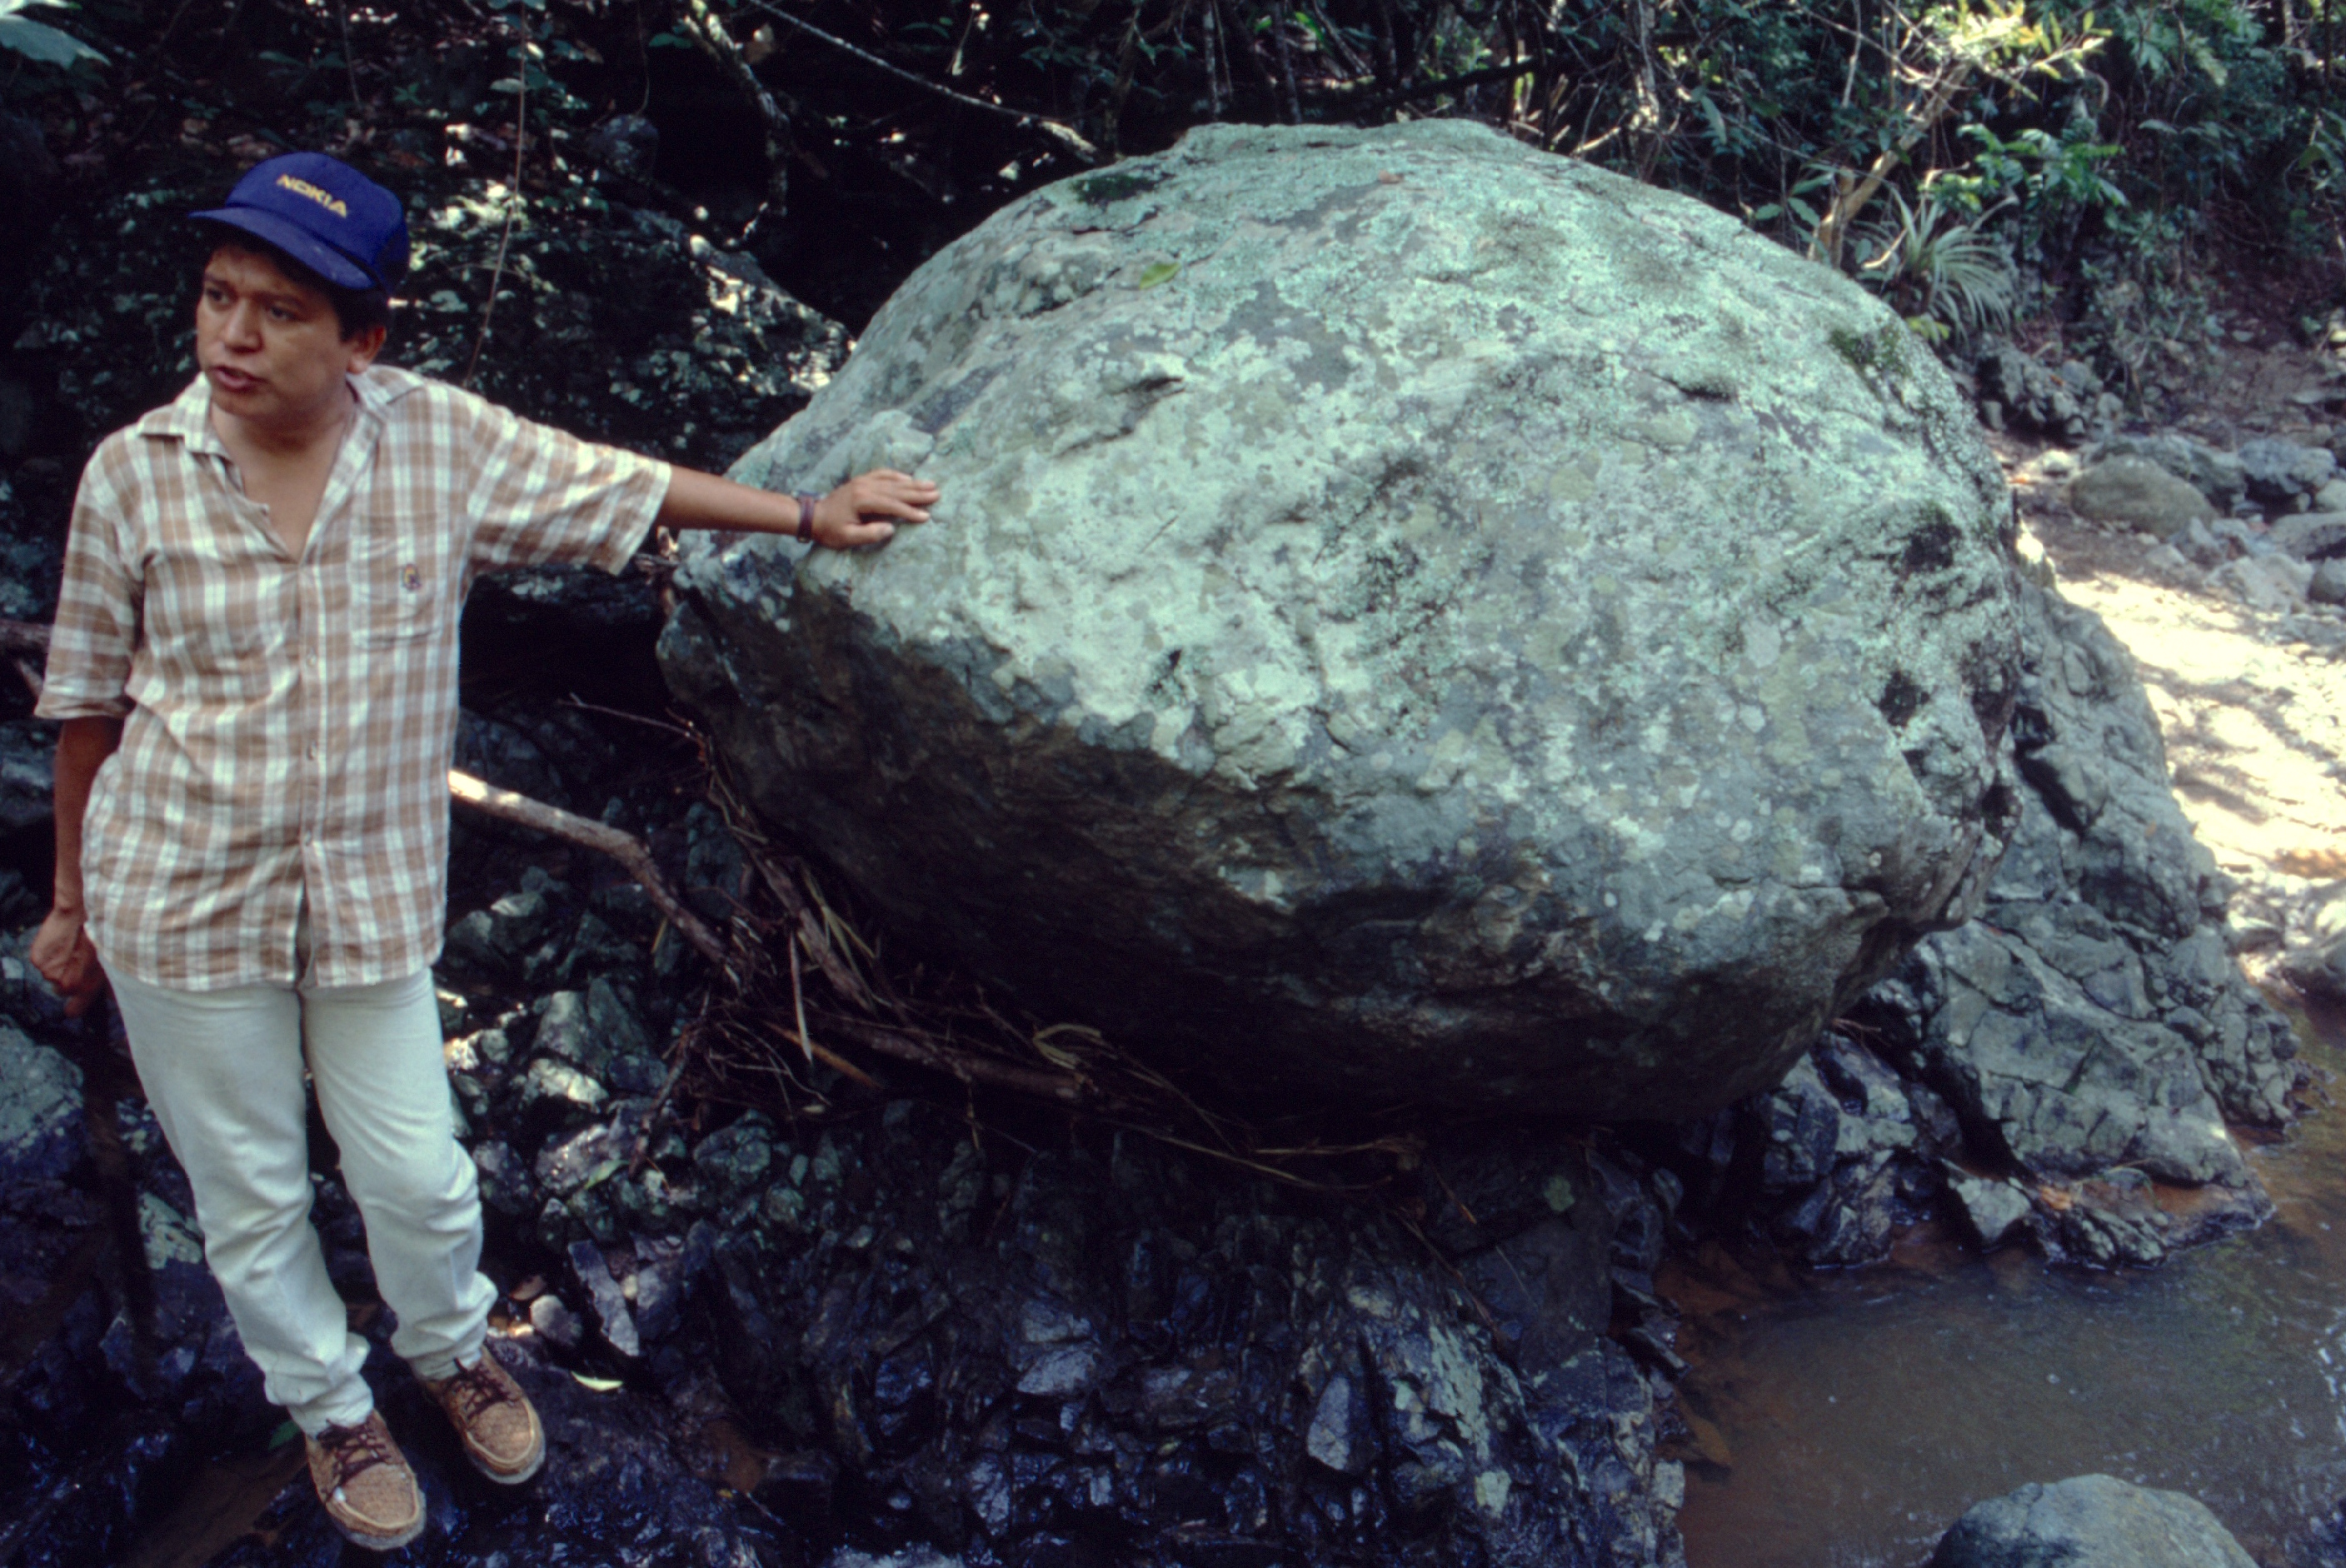 Un mineur dans le sud du Guatemala, où l’on a retrouvé depuis quelques décennies à peine la source du jade maya (rio Motagua). Il n’est pas appuyé contre un banal rocher mais à un énorme bloc de jade, impossible à déplacer.